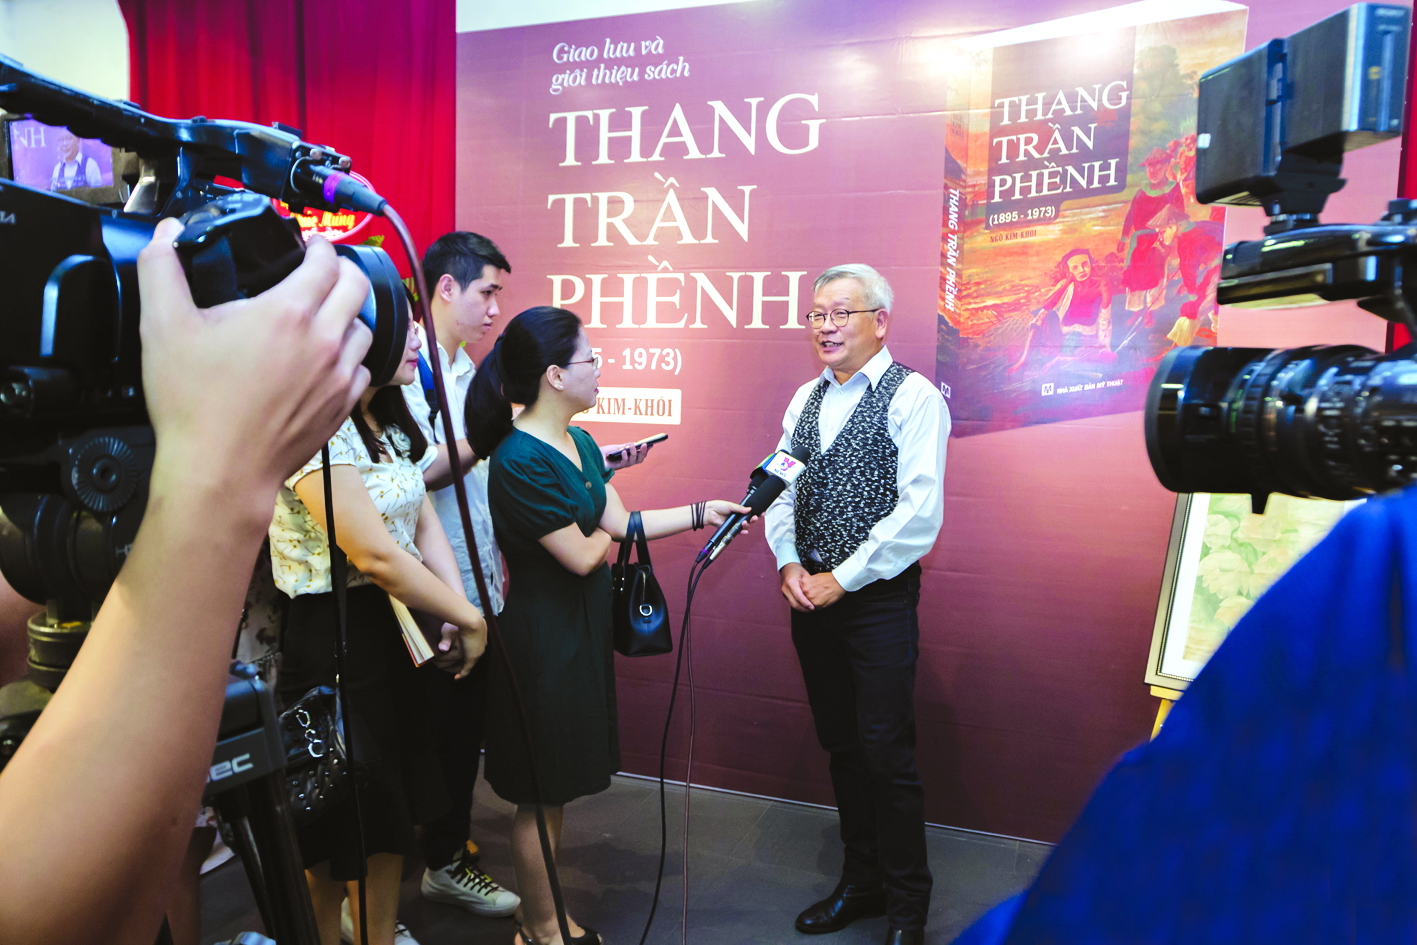 Nhà nghiên cứu mỹ thuật Ngô Kim Khôi tại buổi ra mắt sách Thang Trần Phềnh tại Hà Nội năm 2018